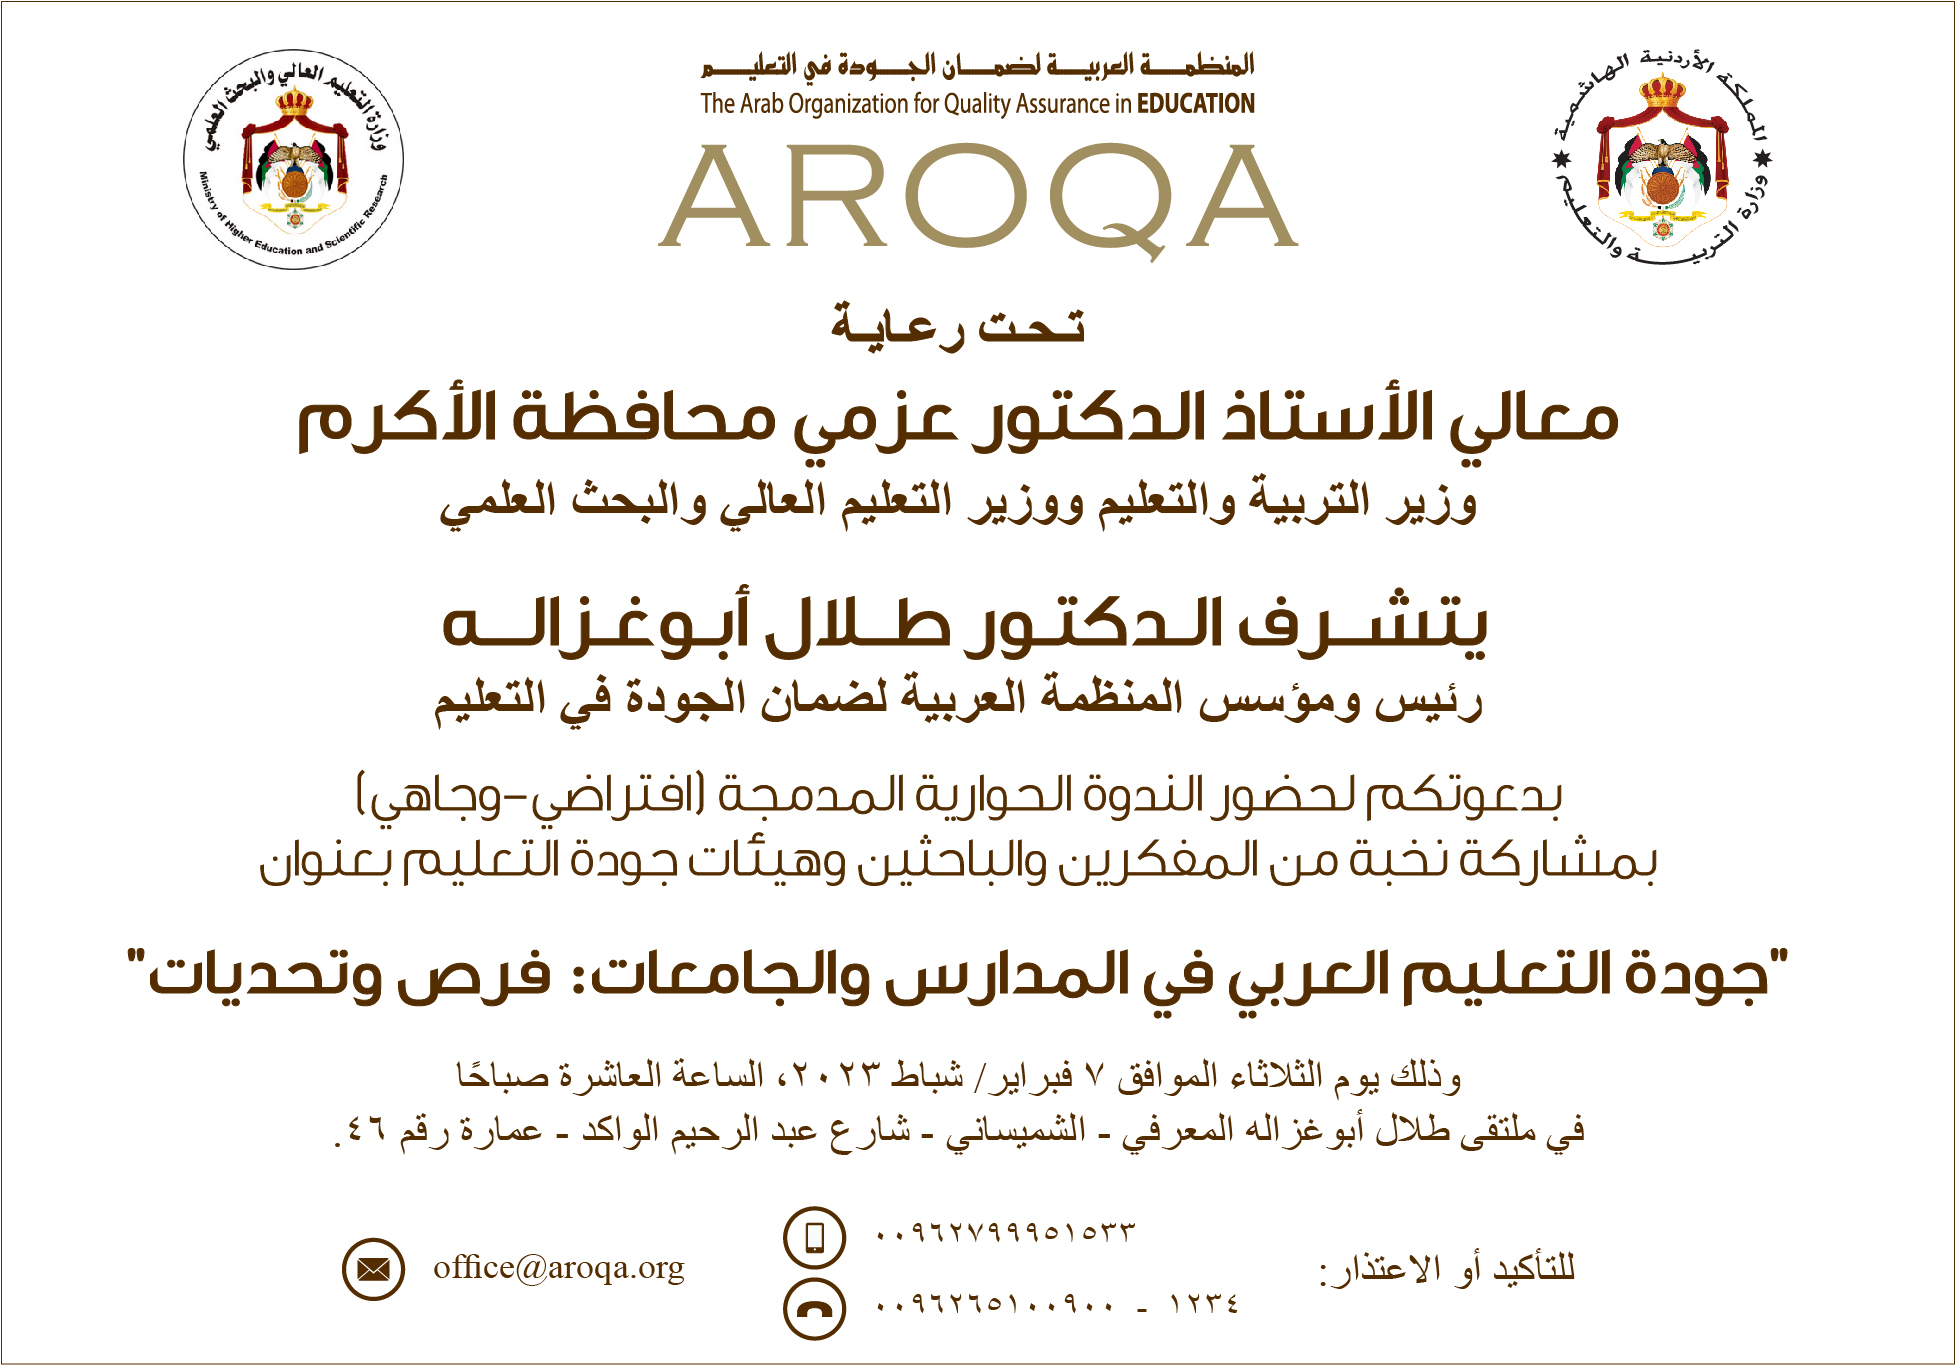 AROQA Organizes Regional Seminar on Quality Education in the Arab World